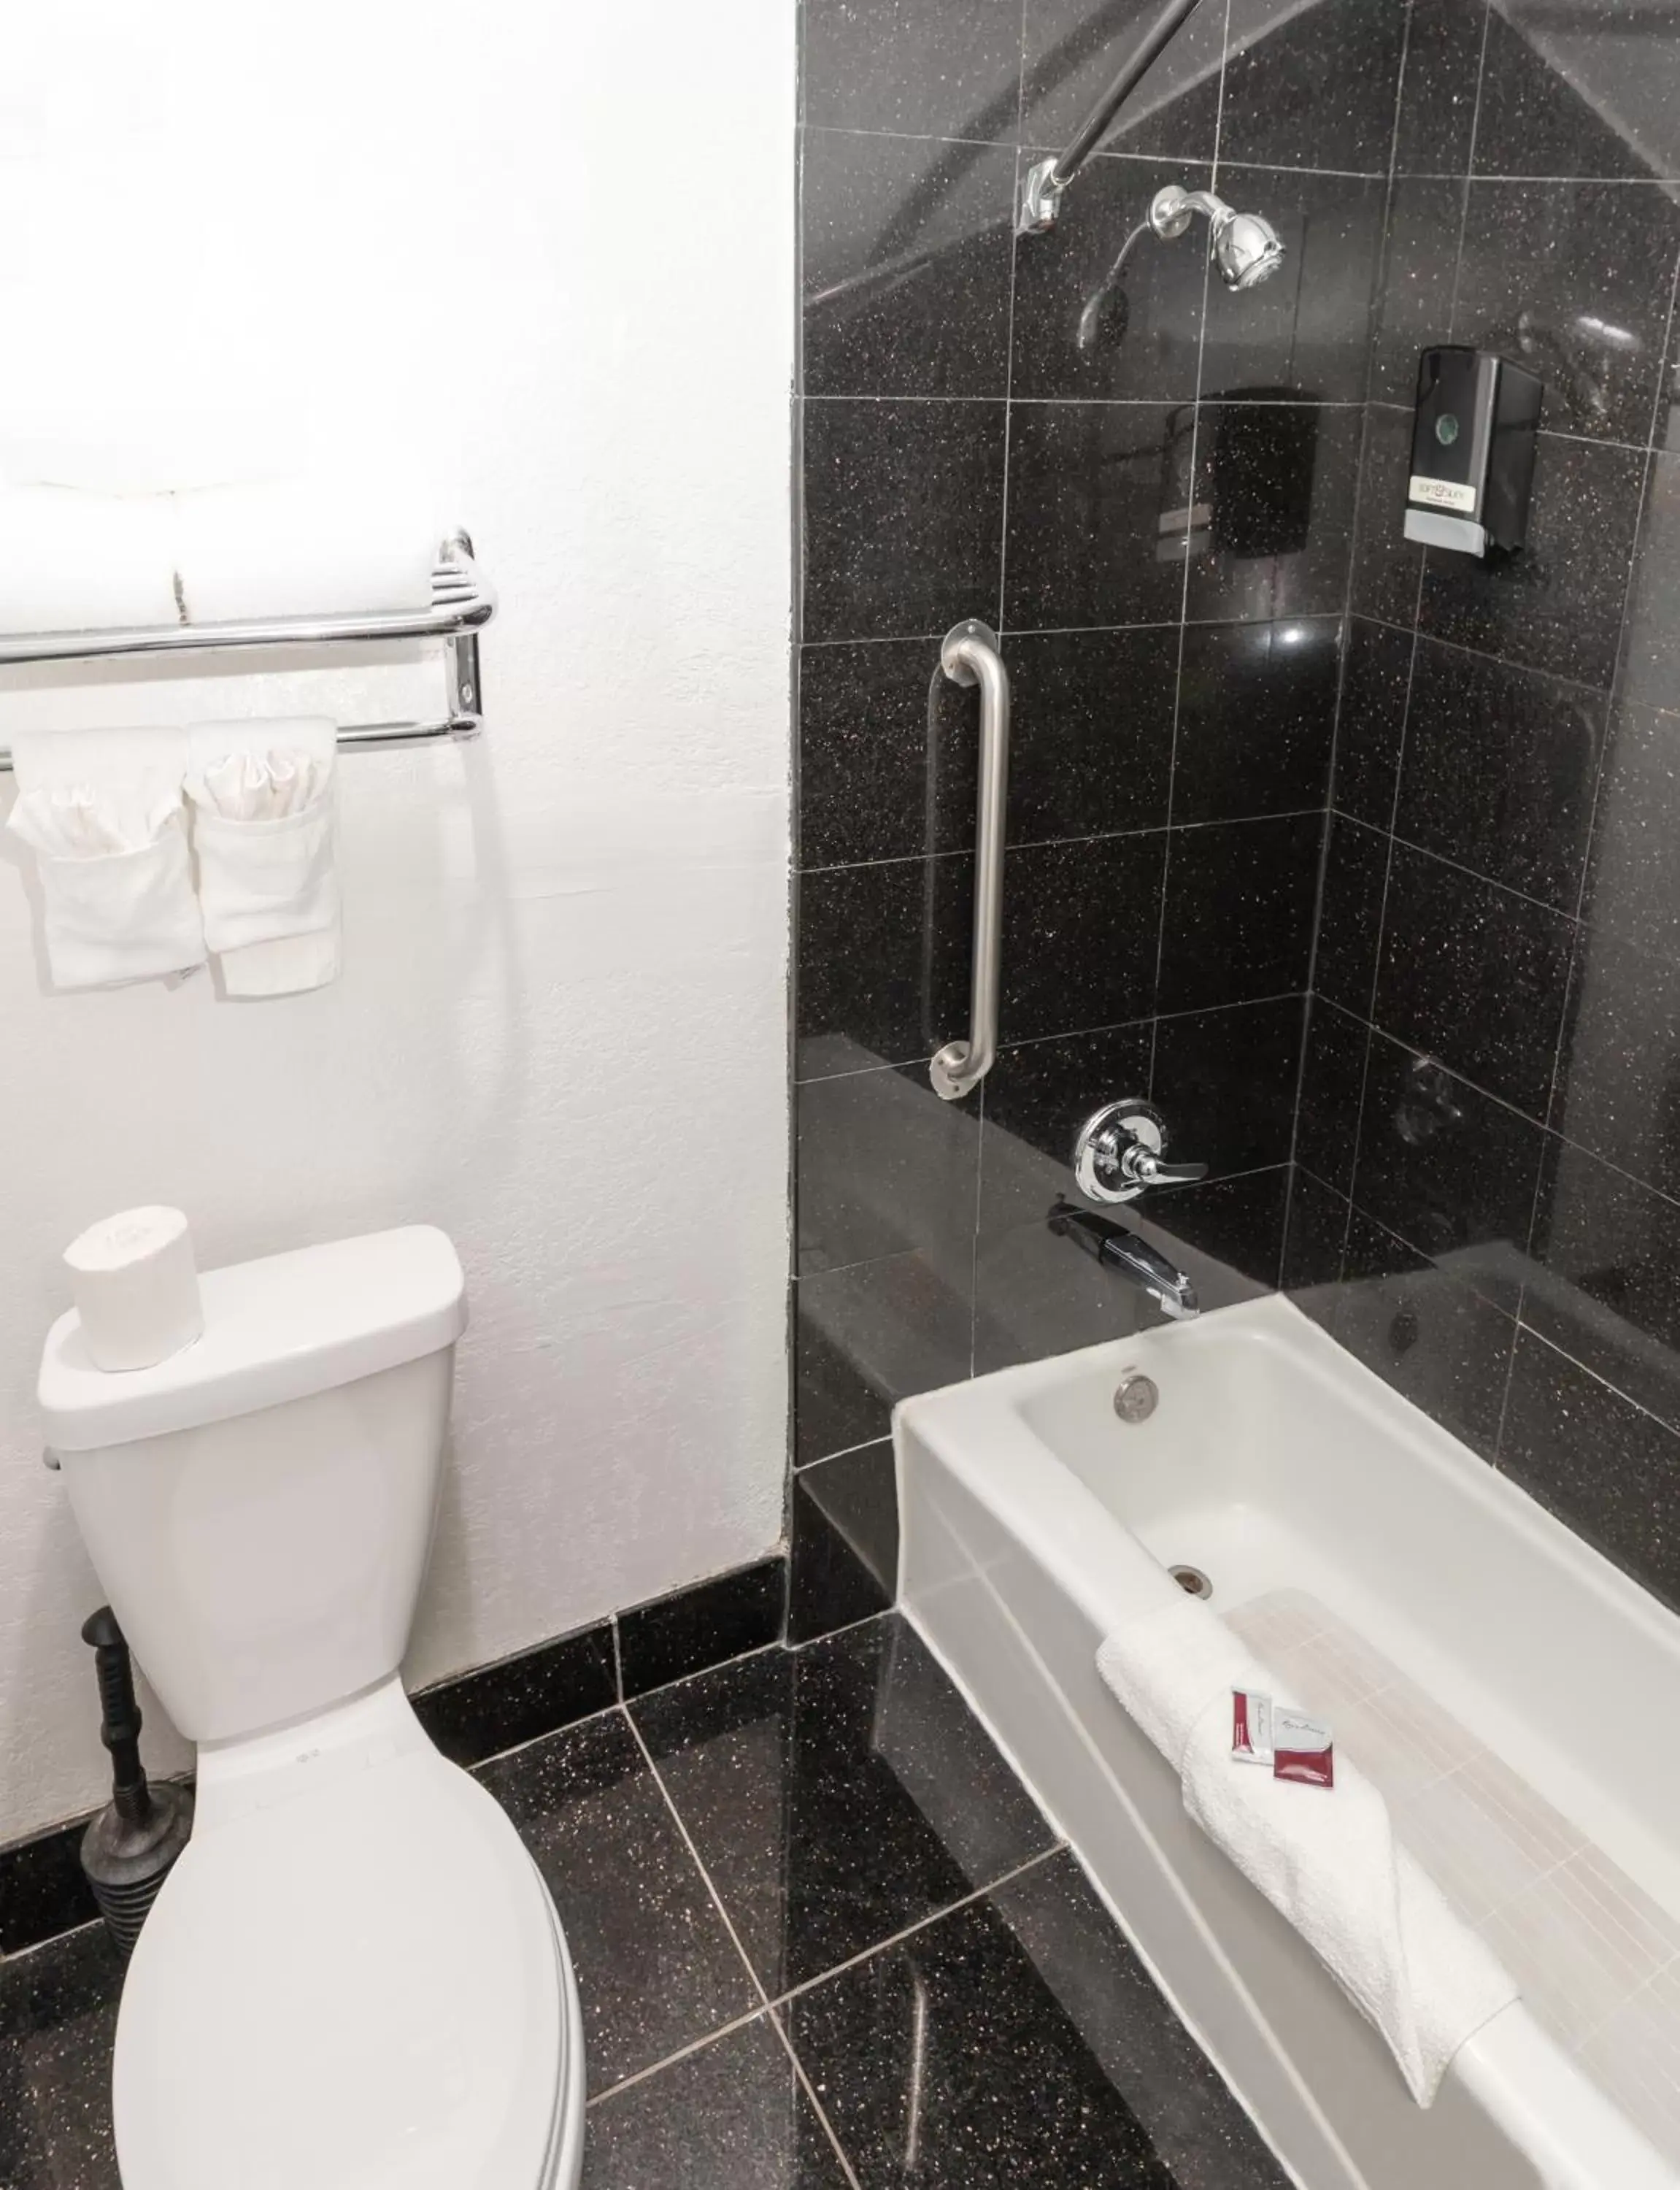 Bathroom in Crown Hotel